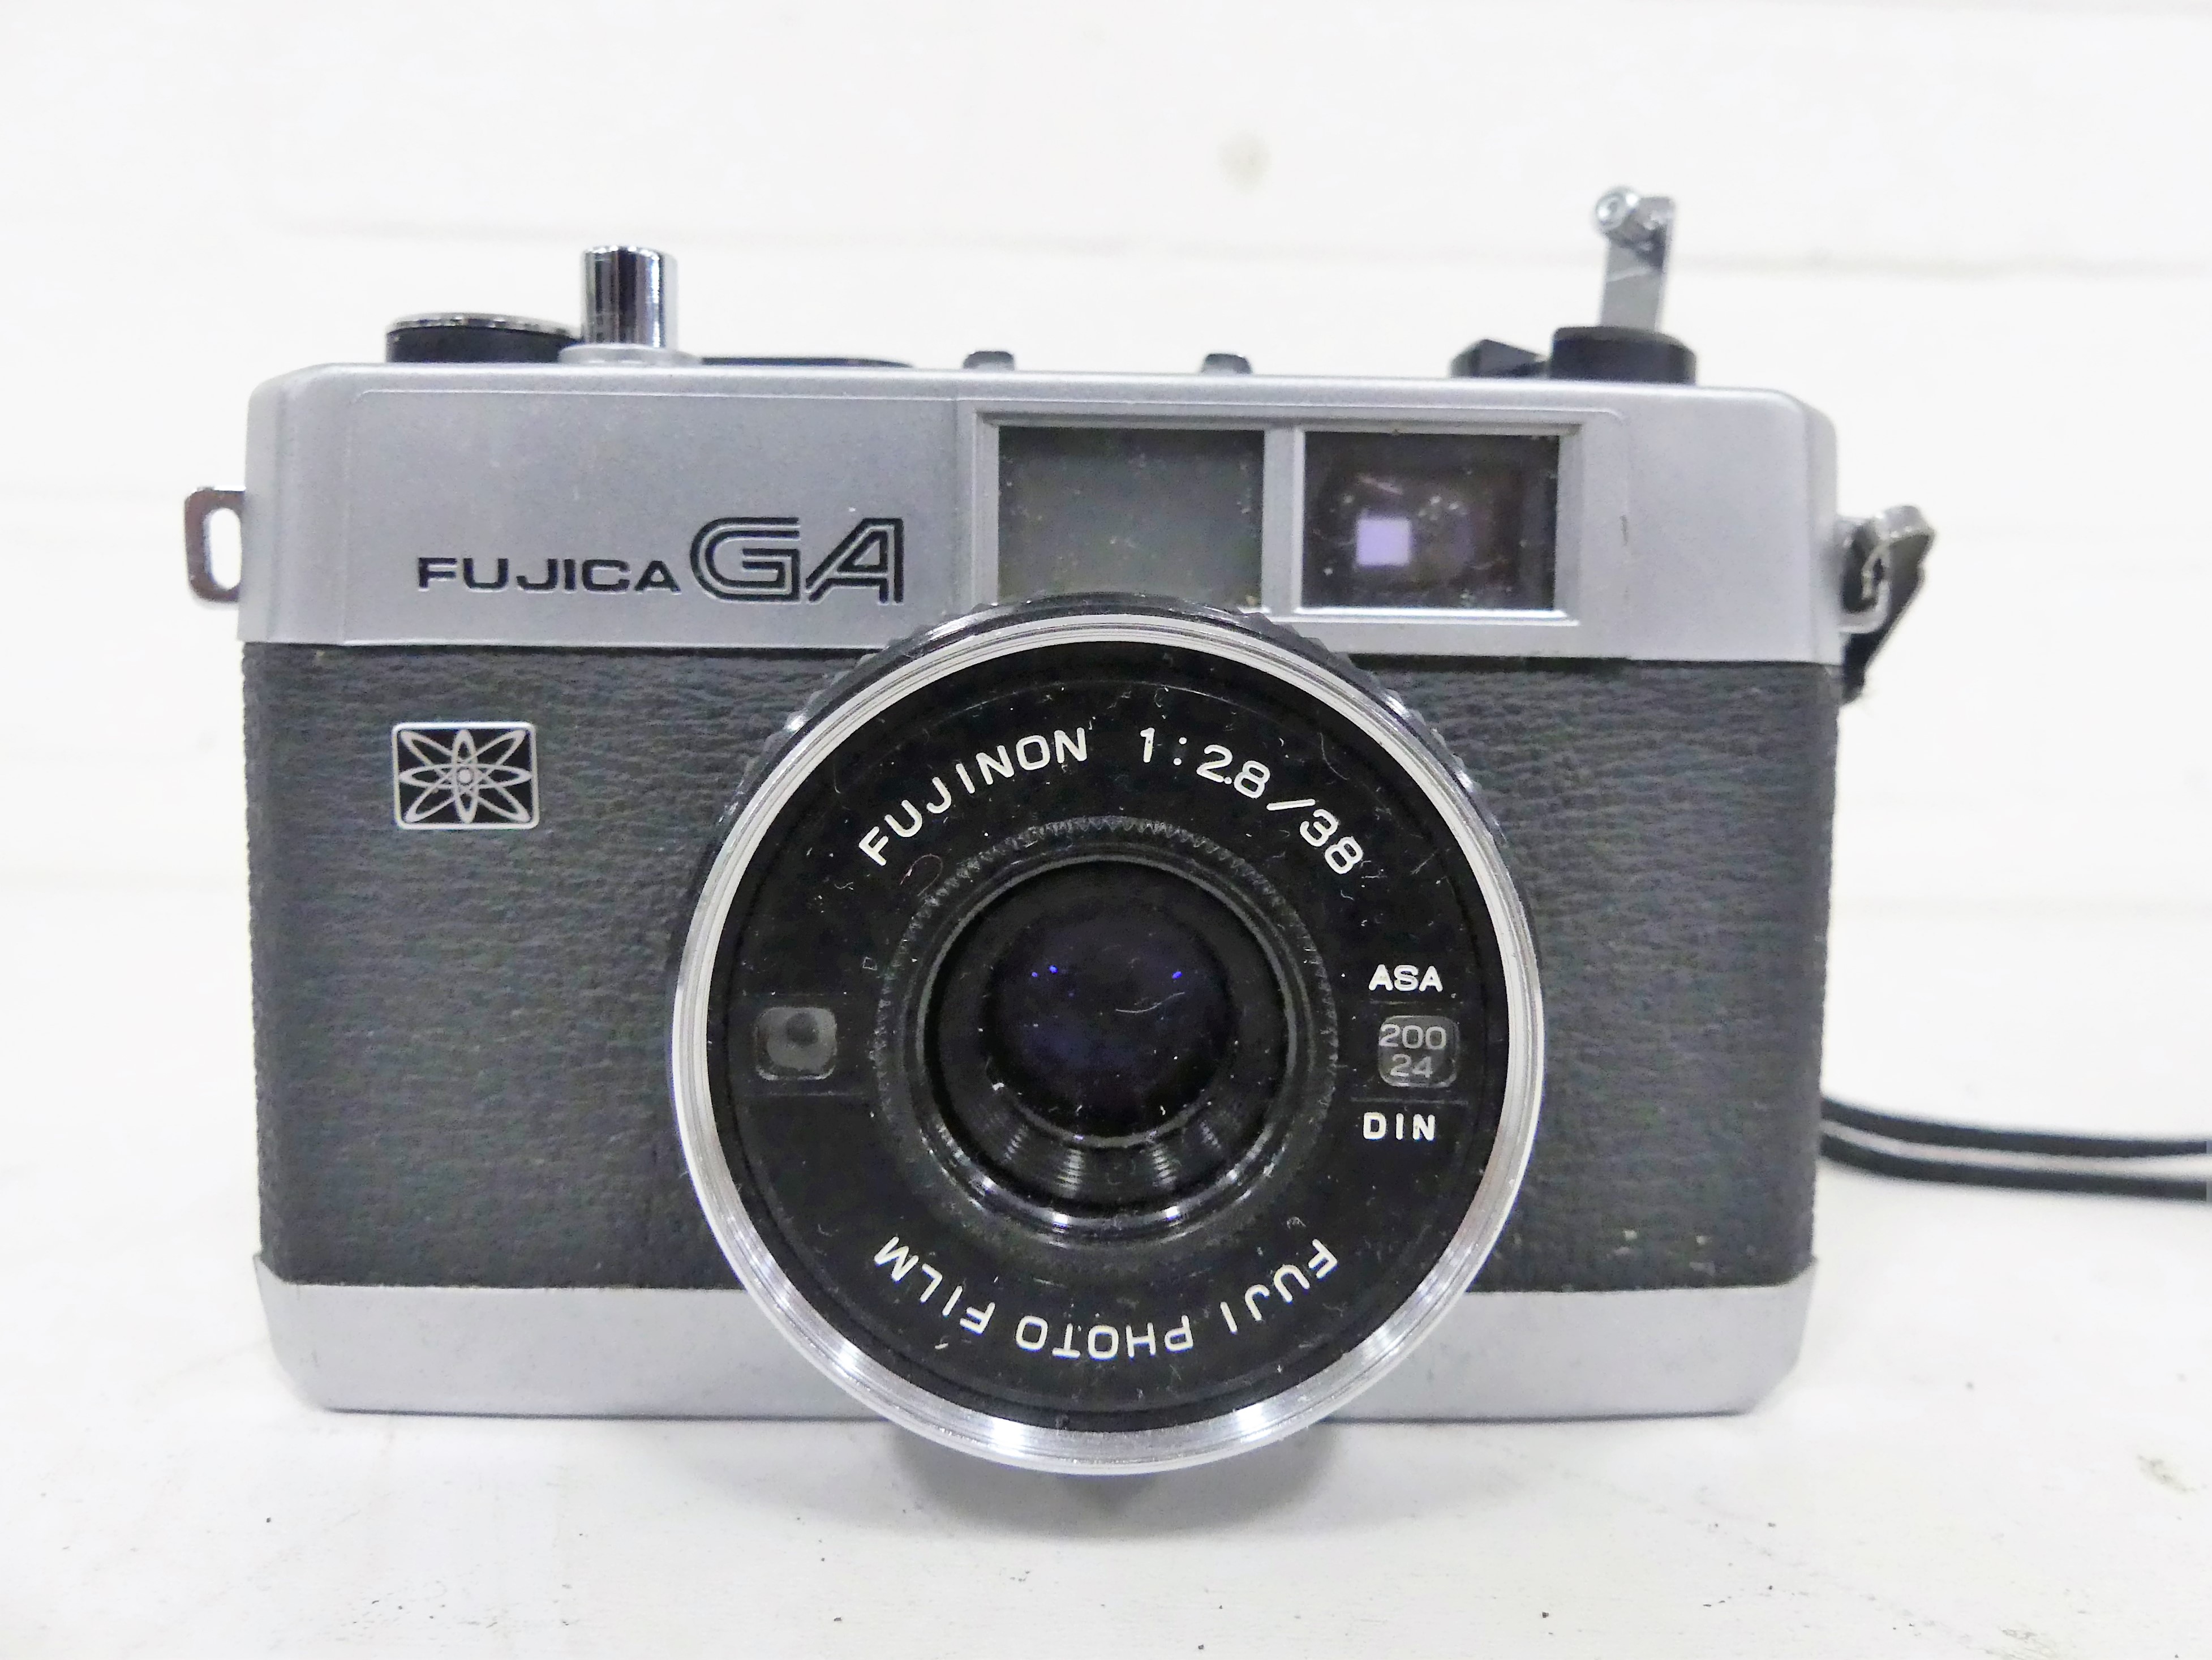 Fujica GA Fujinon 1:28/38, 1970